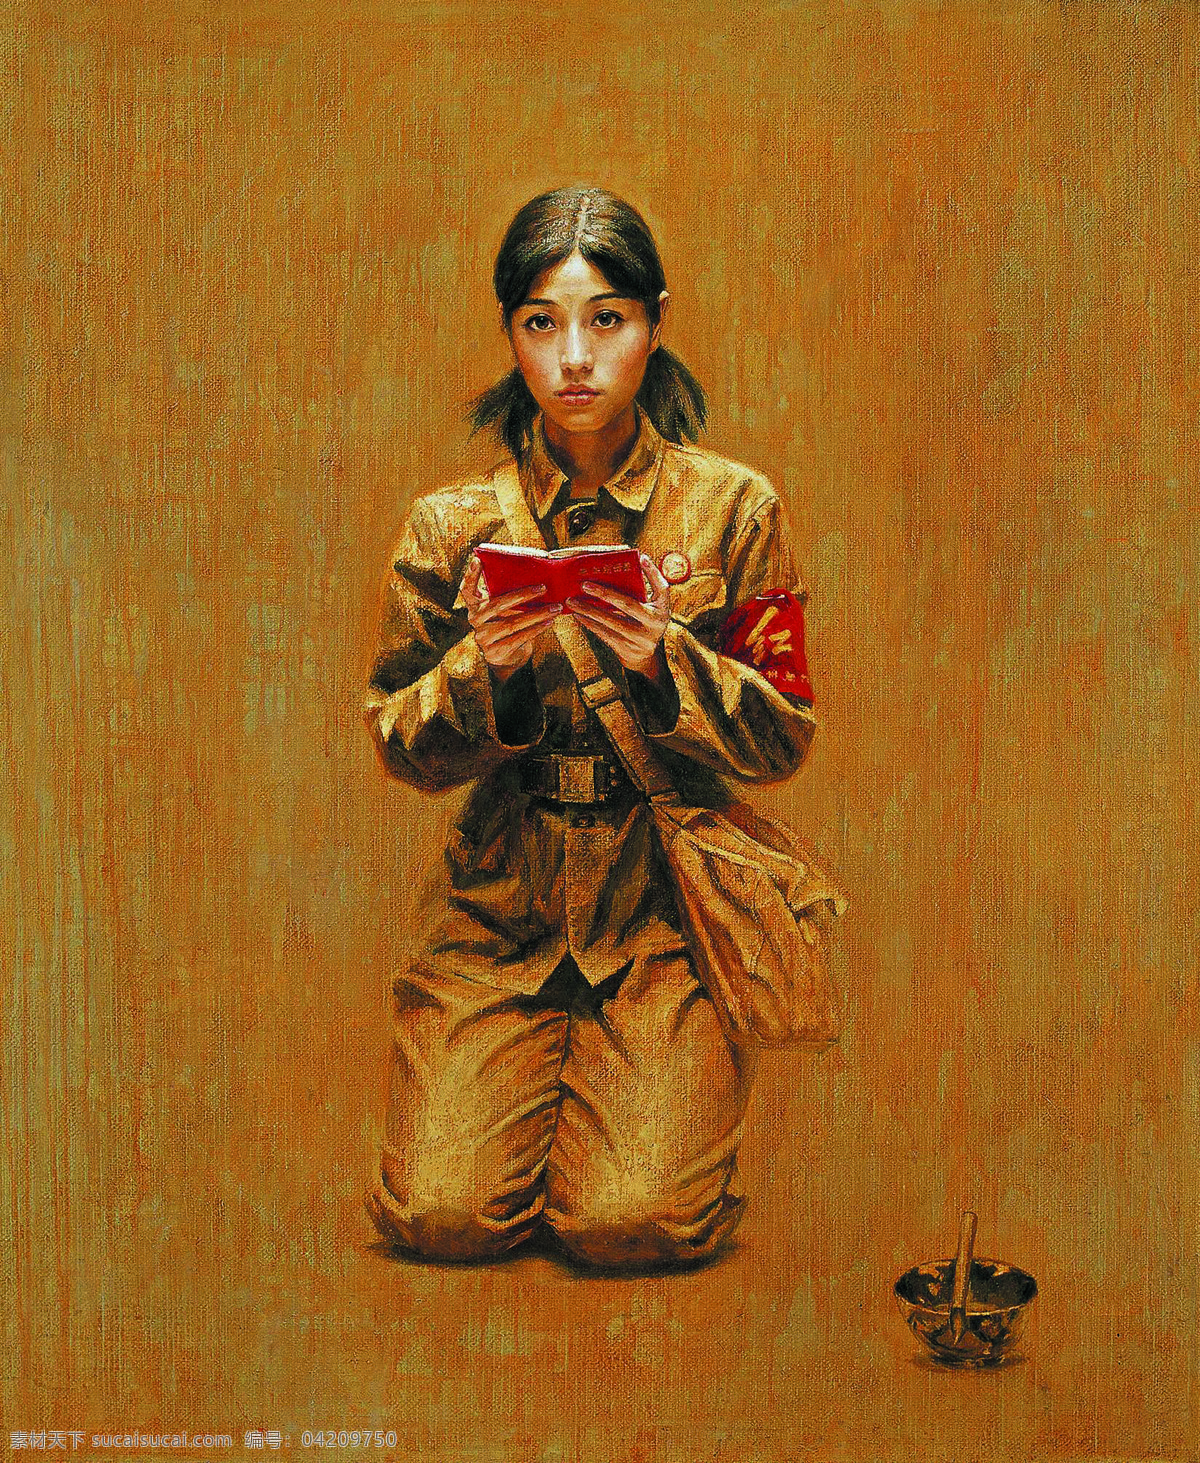 沉淀的记忆 美术 油画 人物画 女人 姑娘 红卫兵 语录本 油画艺术 绘画书法 文化艺术